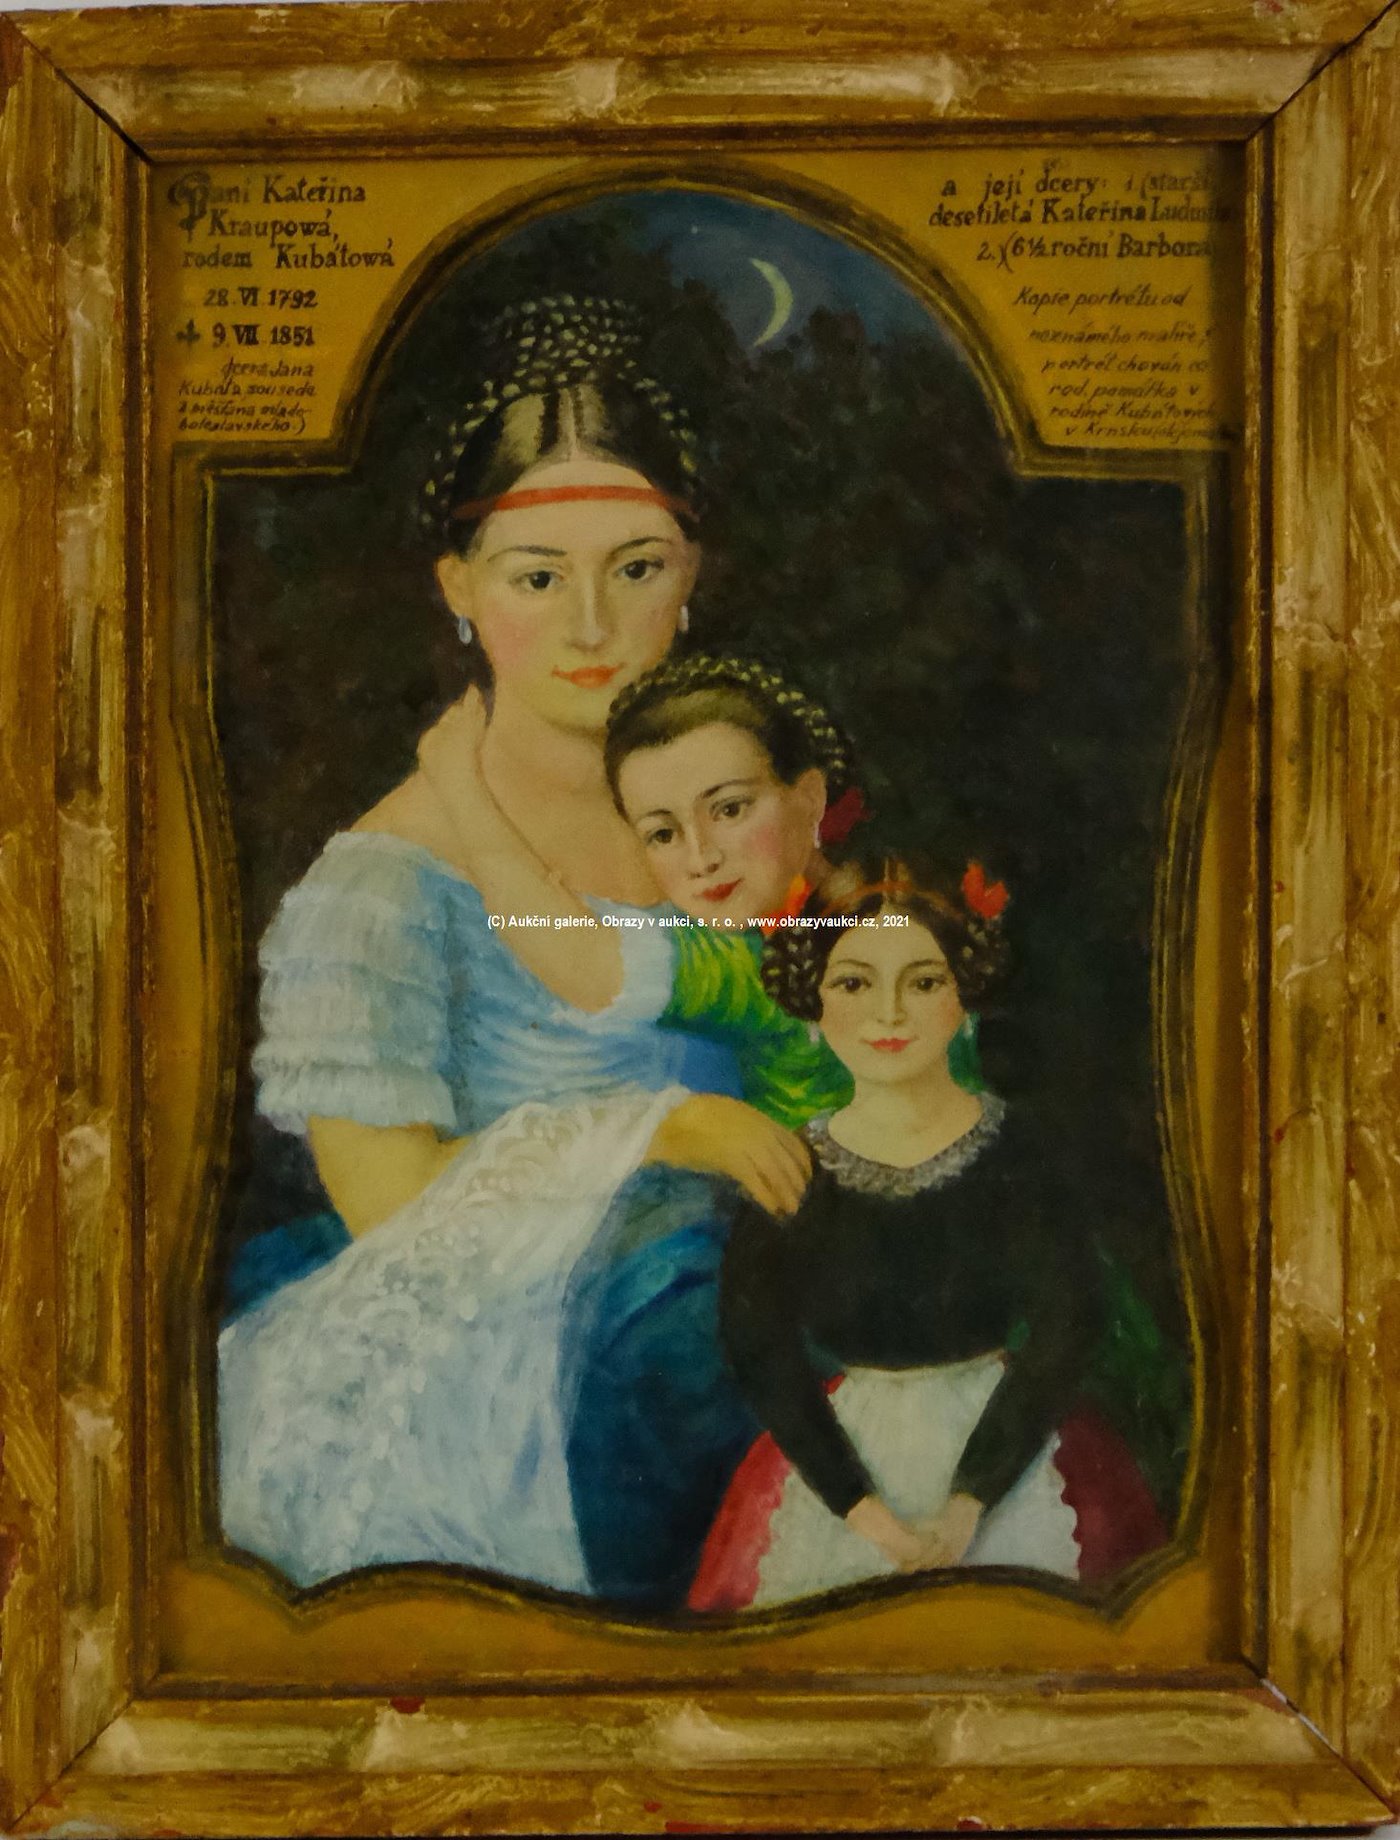 nesignováno - Kopie obrazů neznámého malíře - Paní Kateřina Kraupowá a její dcery